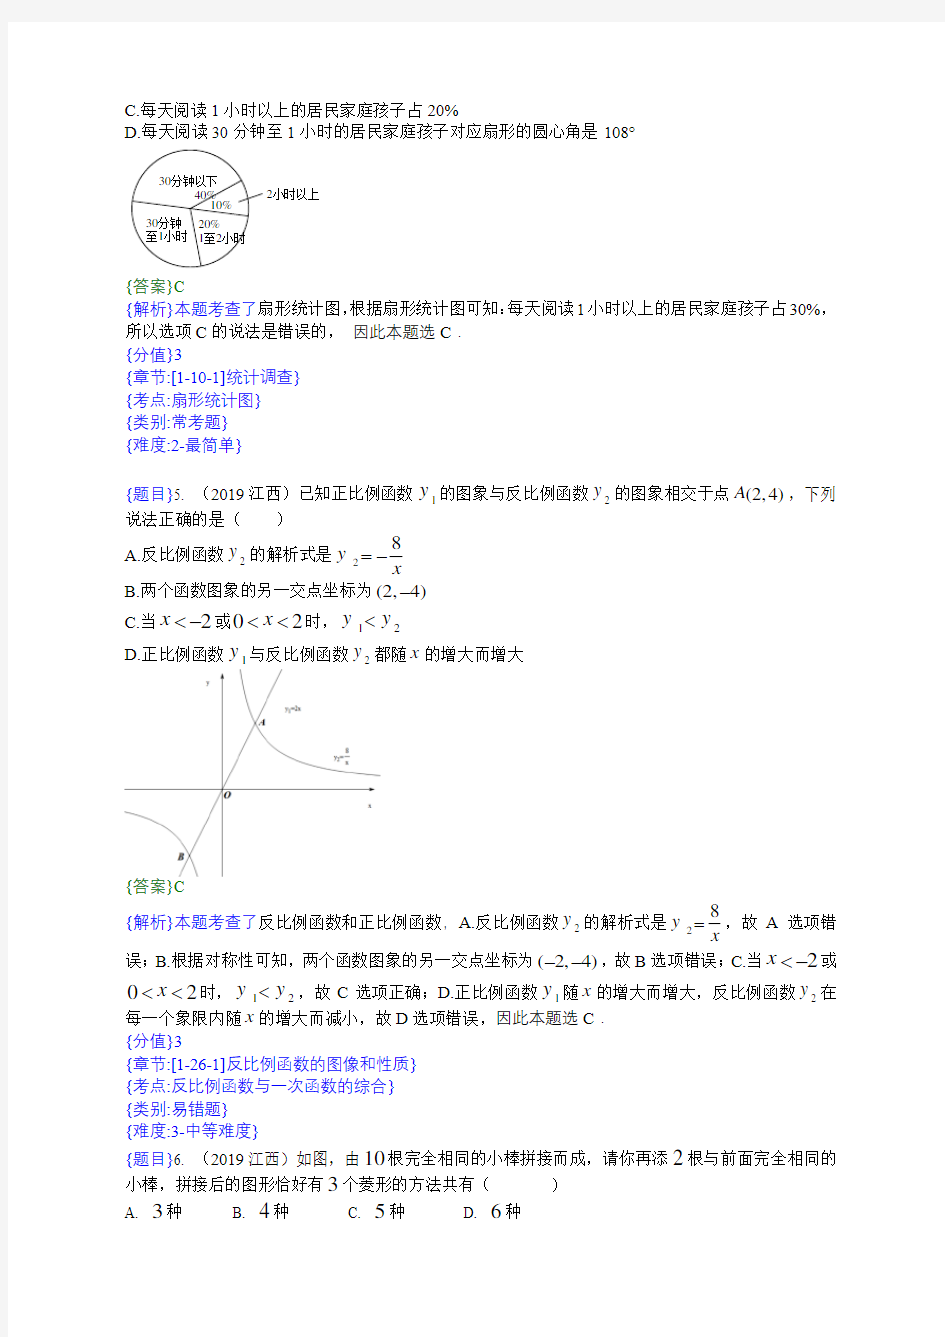 2019年江西中考数学试题(附详细解题分析)